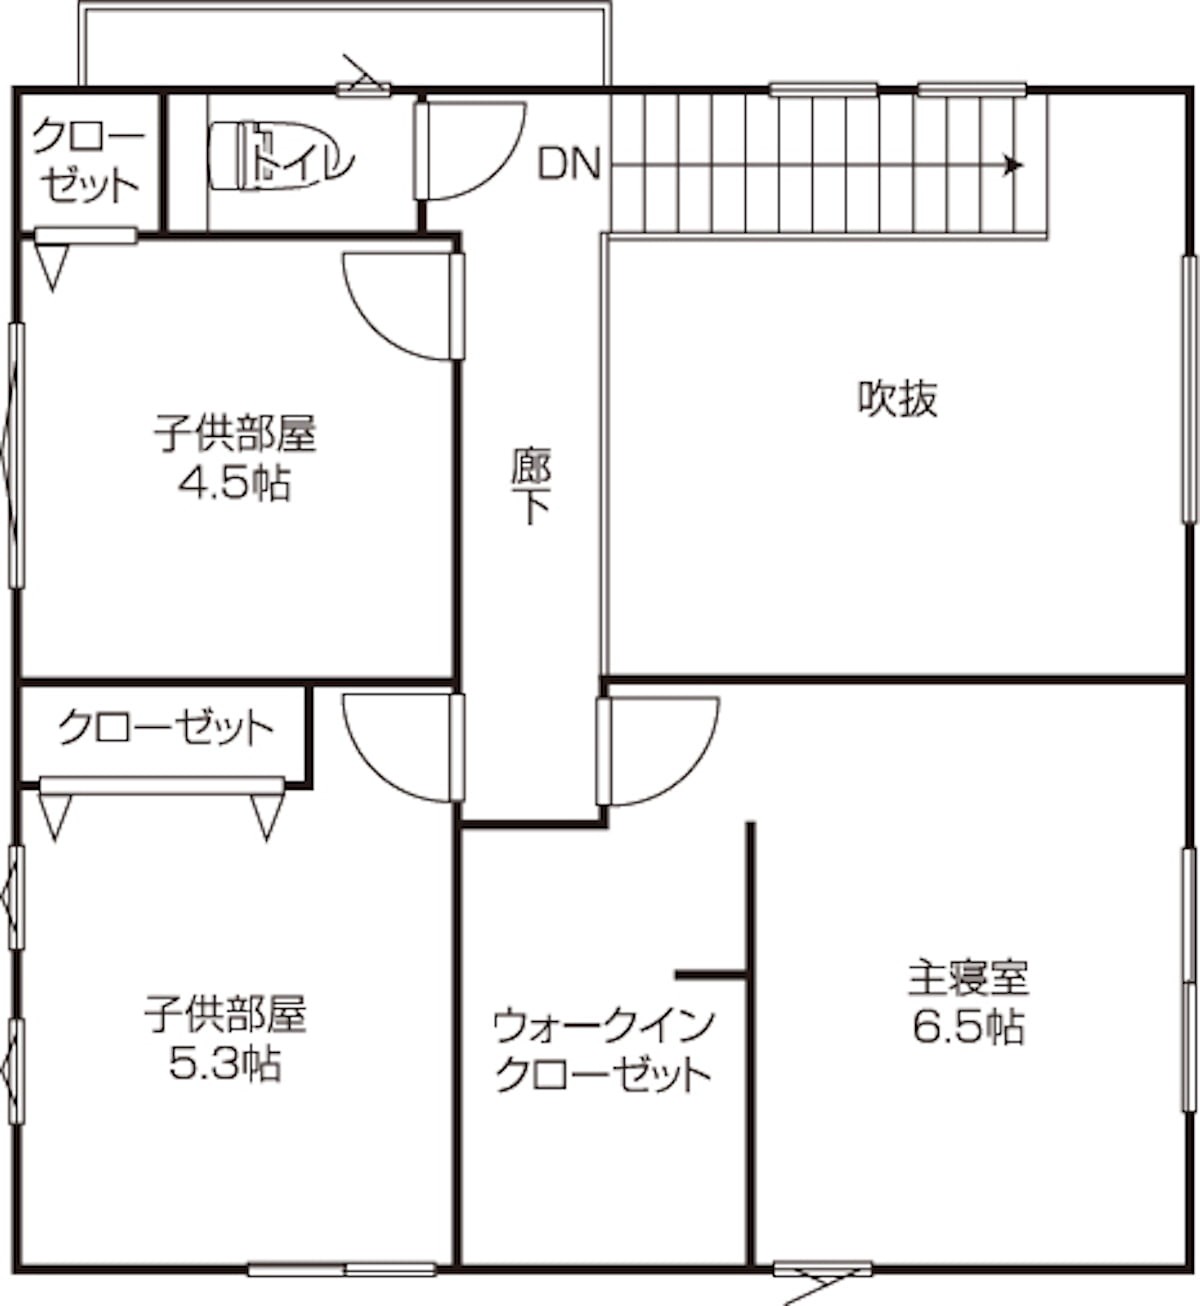 岡山県のおすすめ工務店「さんもく工業」による「イシンホーム」の新築事例の2階間取り図